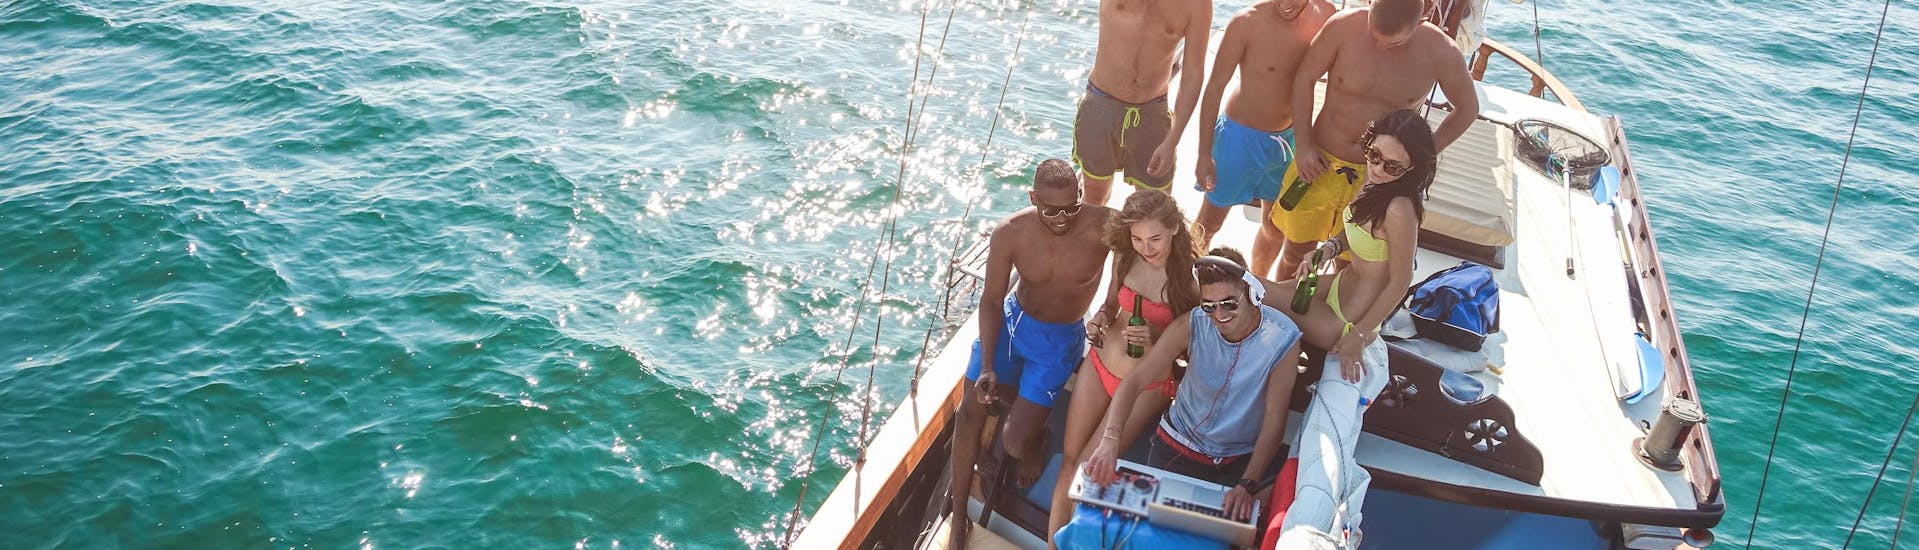 Un gruppo di amici si diverte in una gita in barca con musica dal vivo e dj.